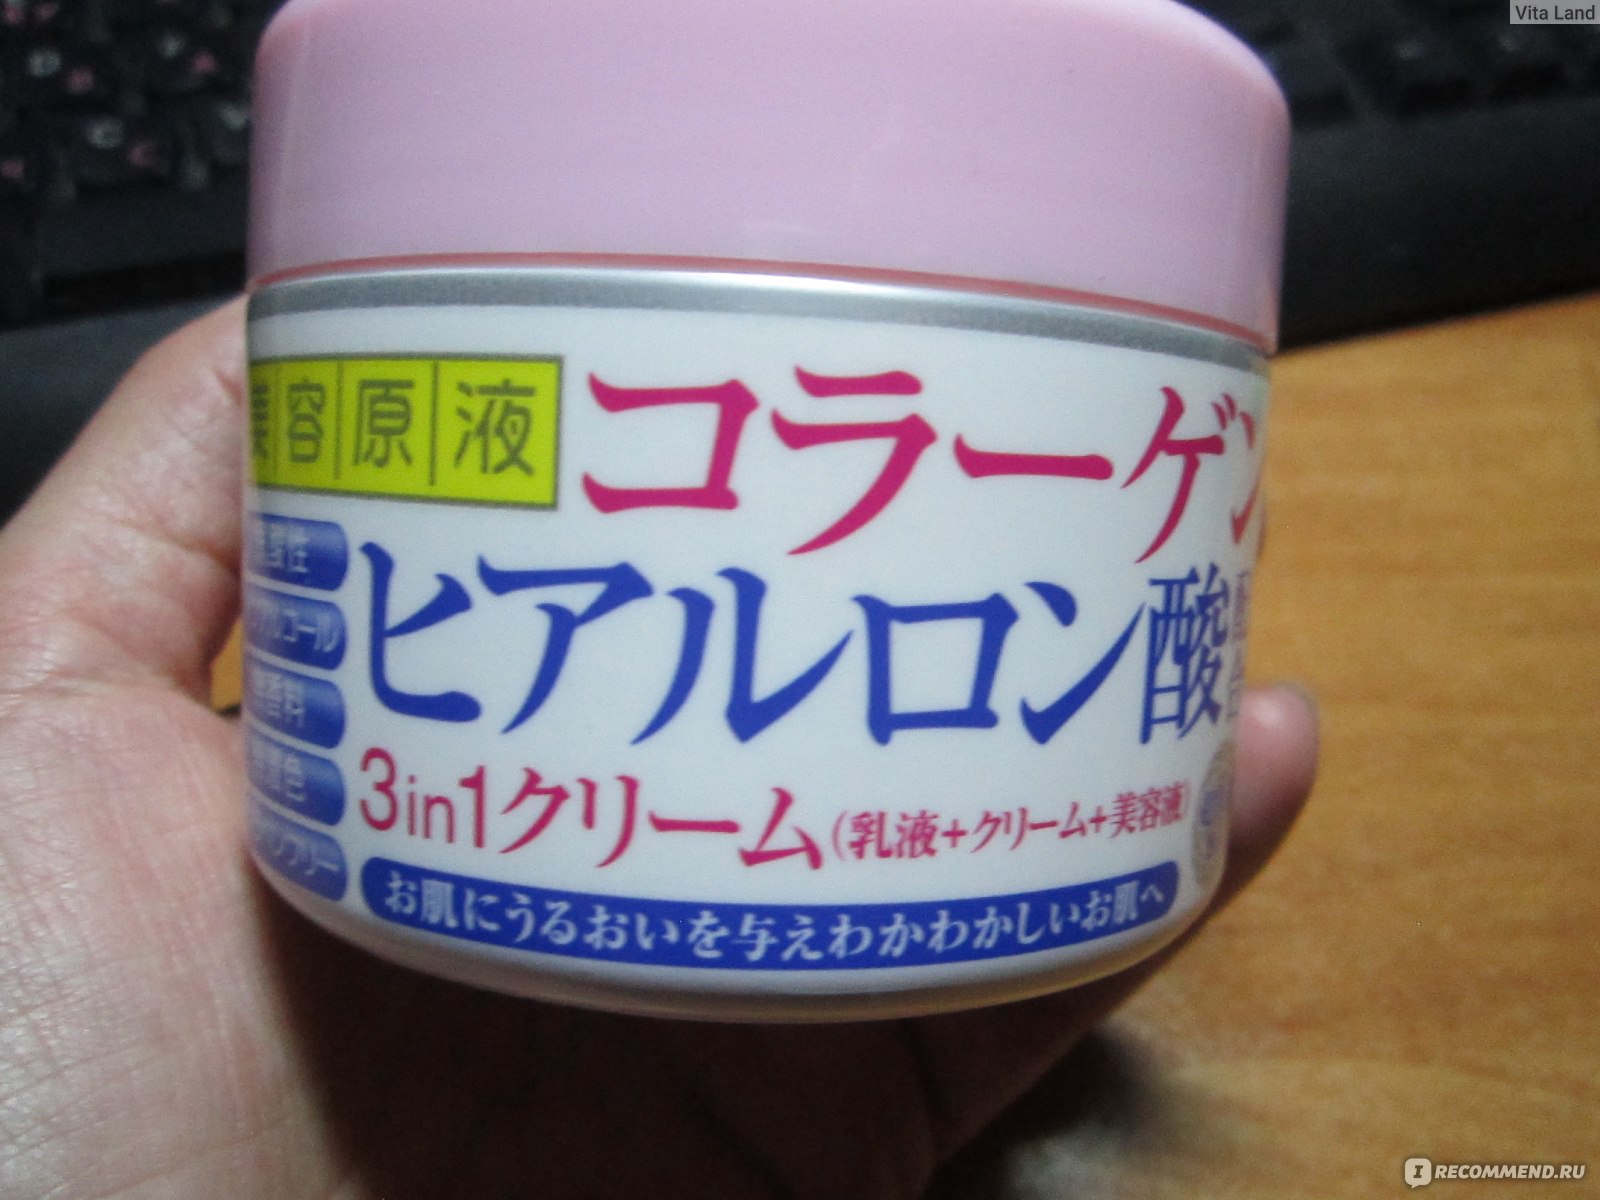 крема из японии